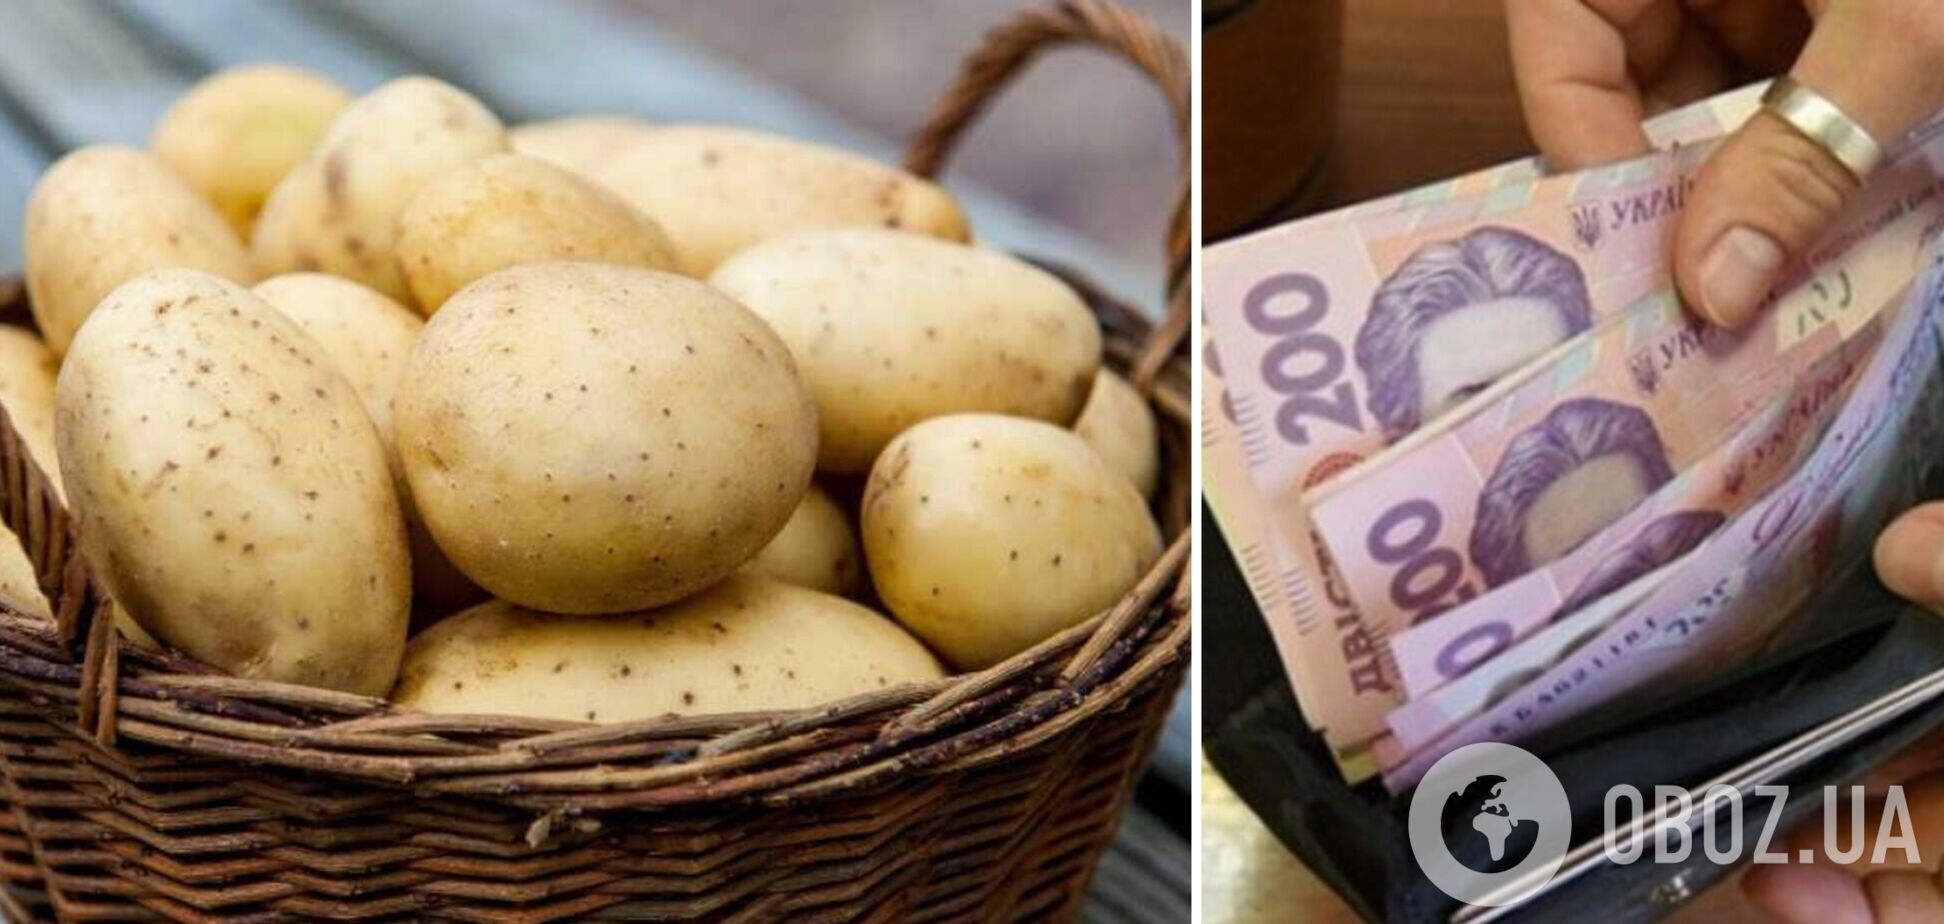 В Украине значительно подорожал картофель